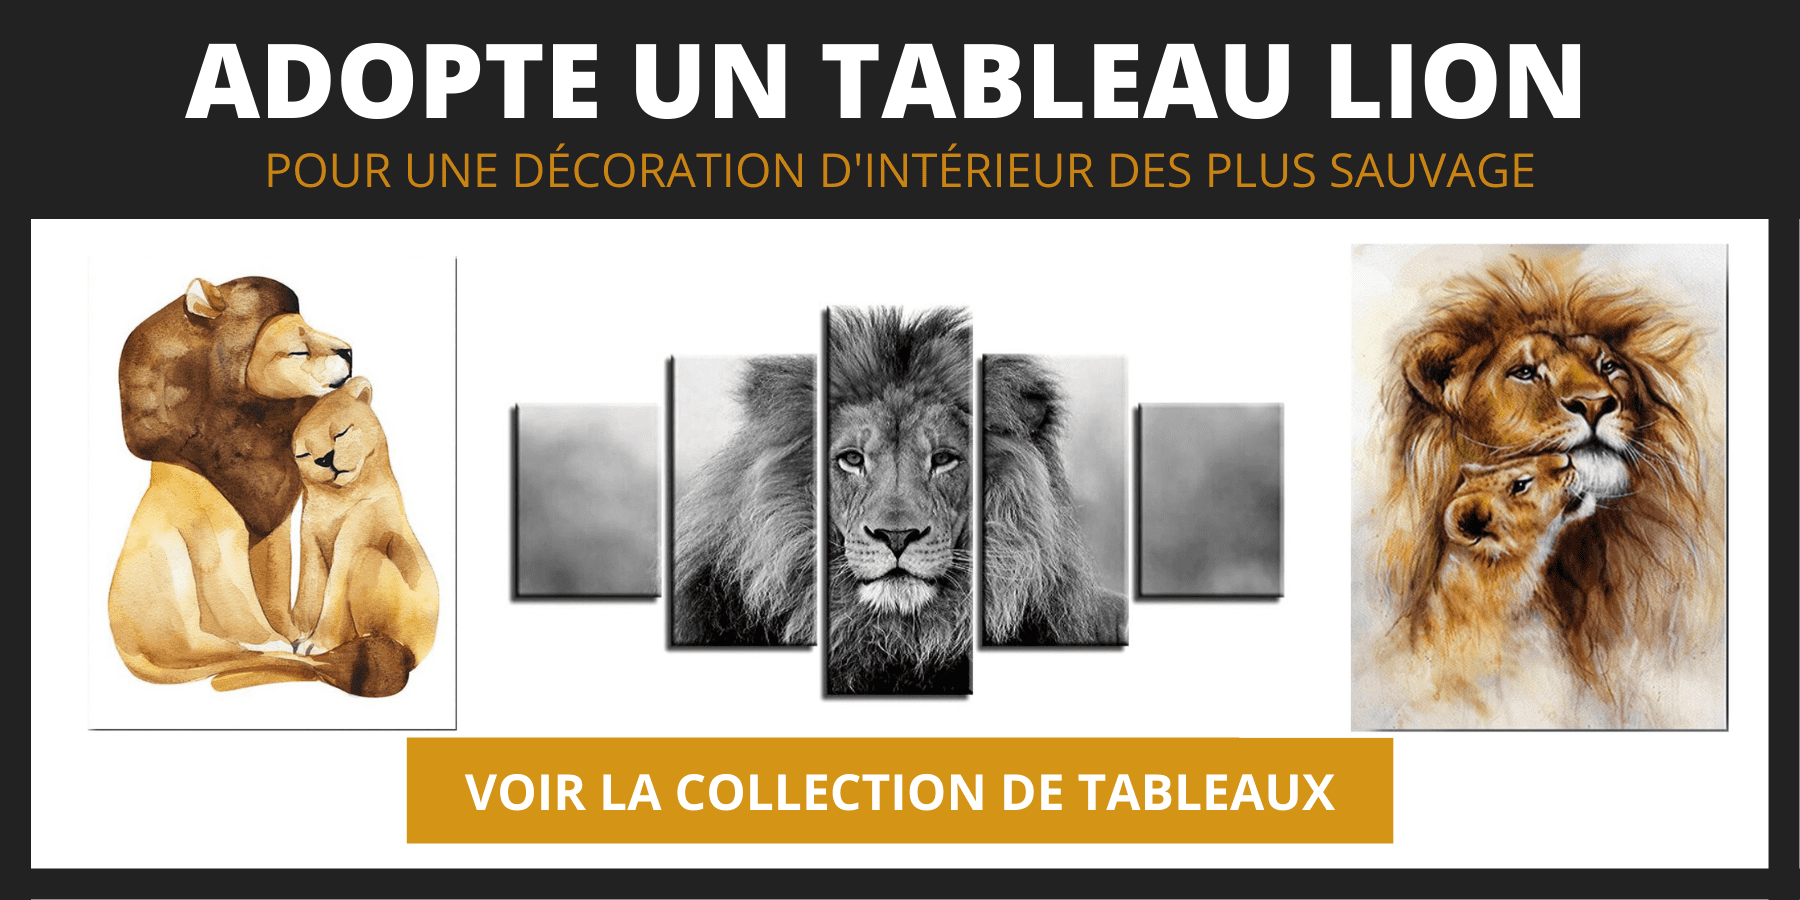 Tableaux lion.